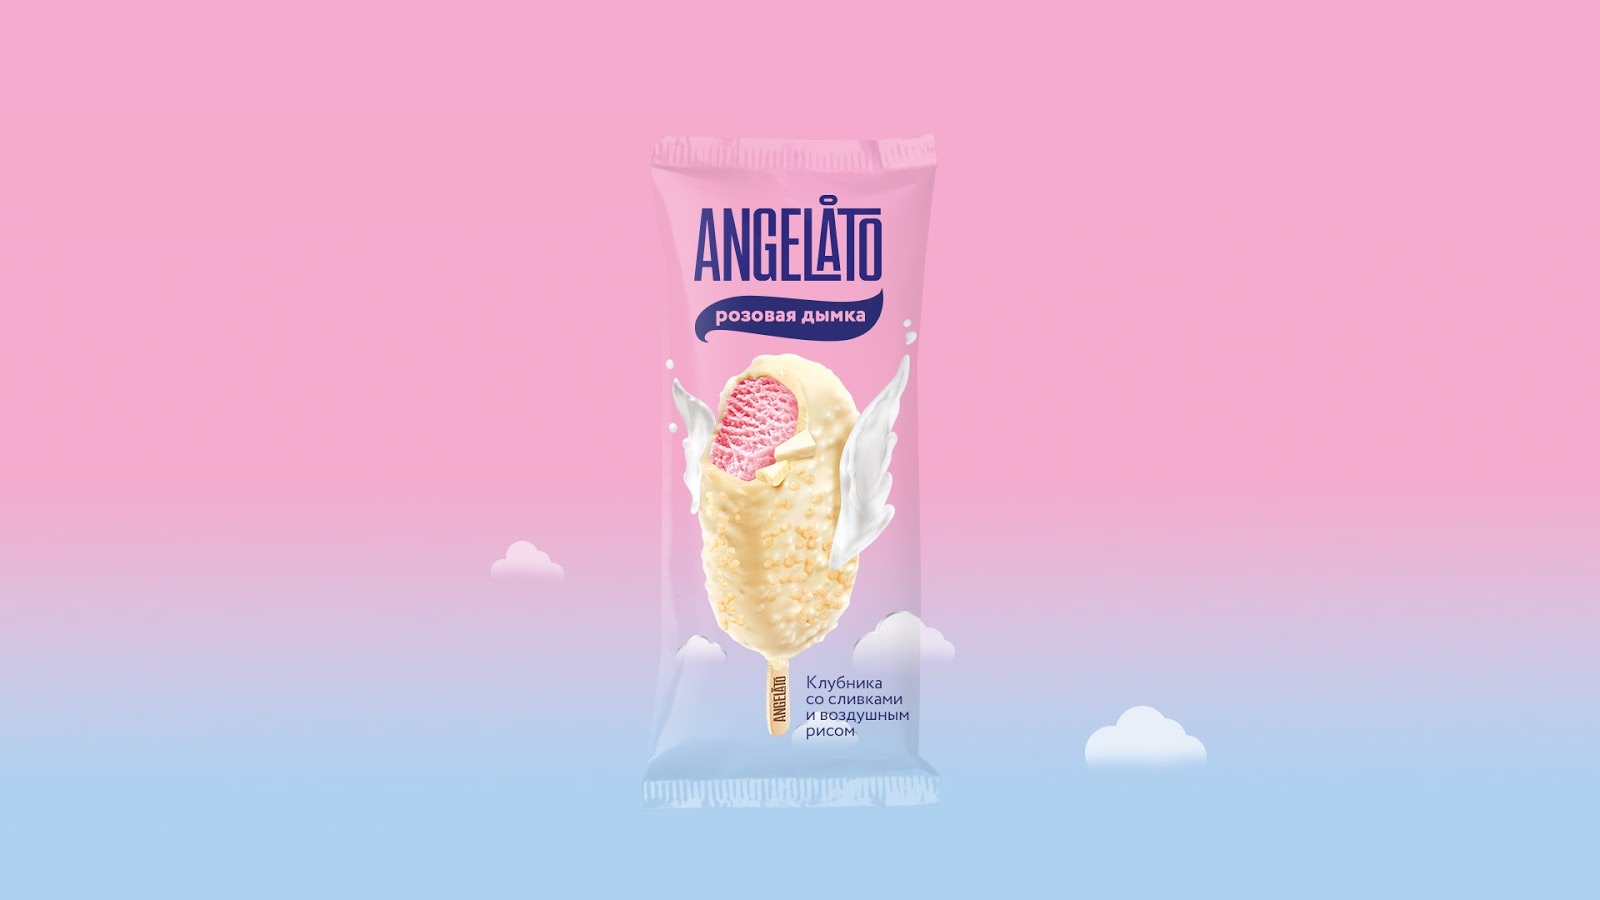 创意美食包装设计，Angelato冰淇淋包装设计作品欣赏。